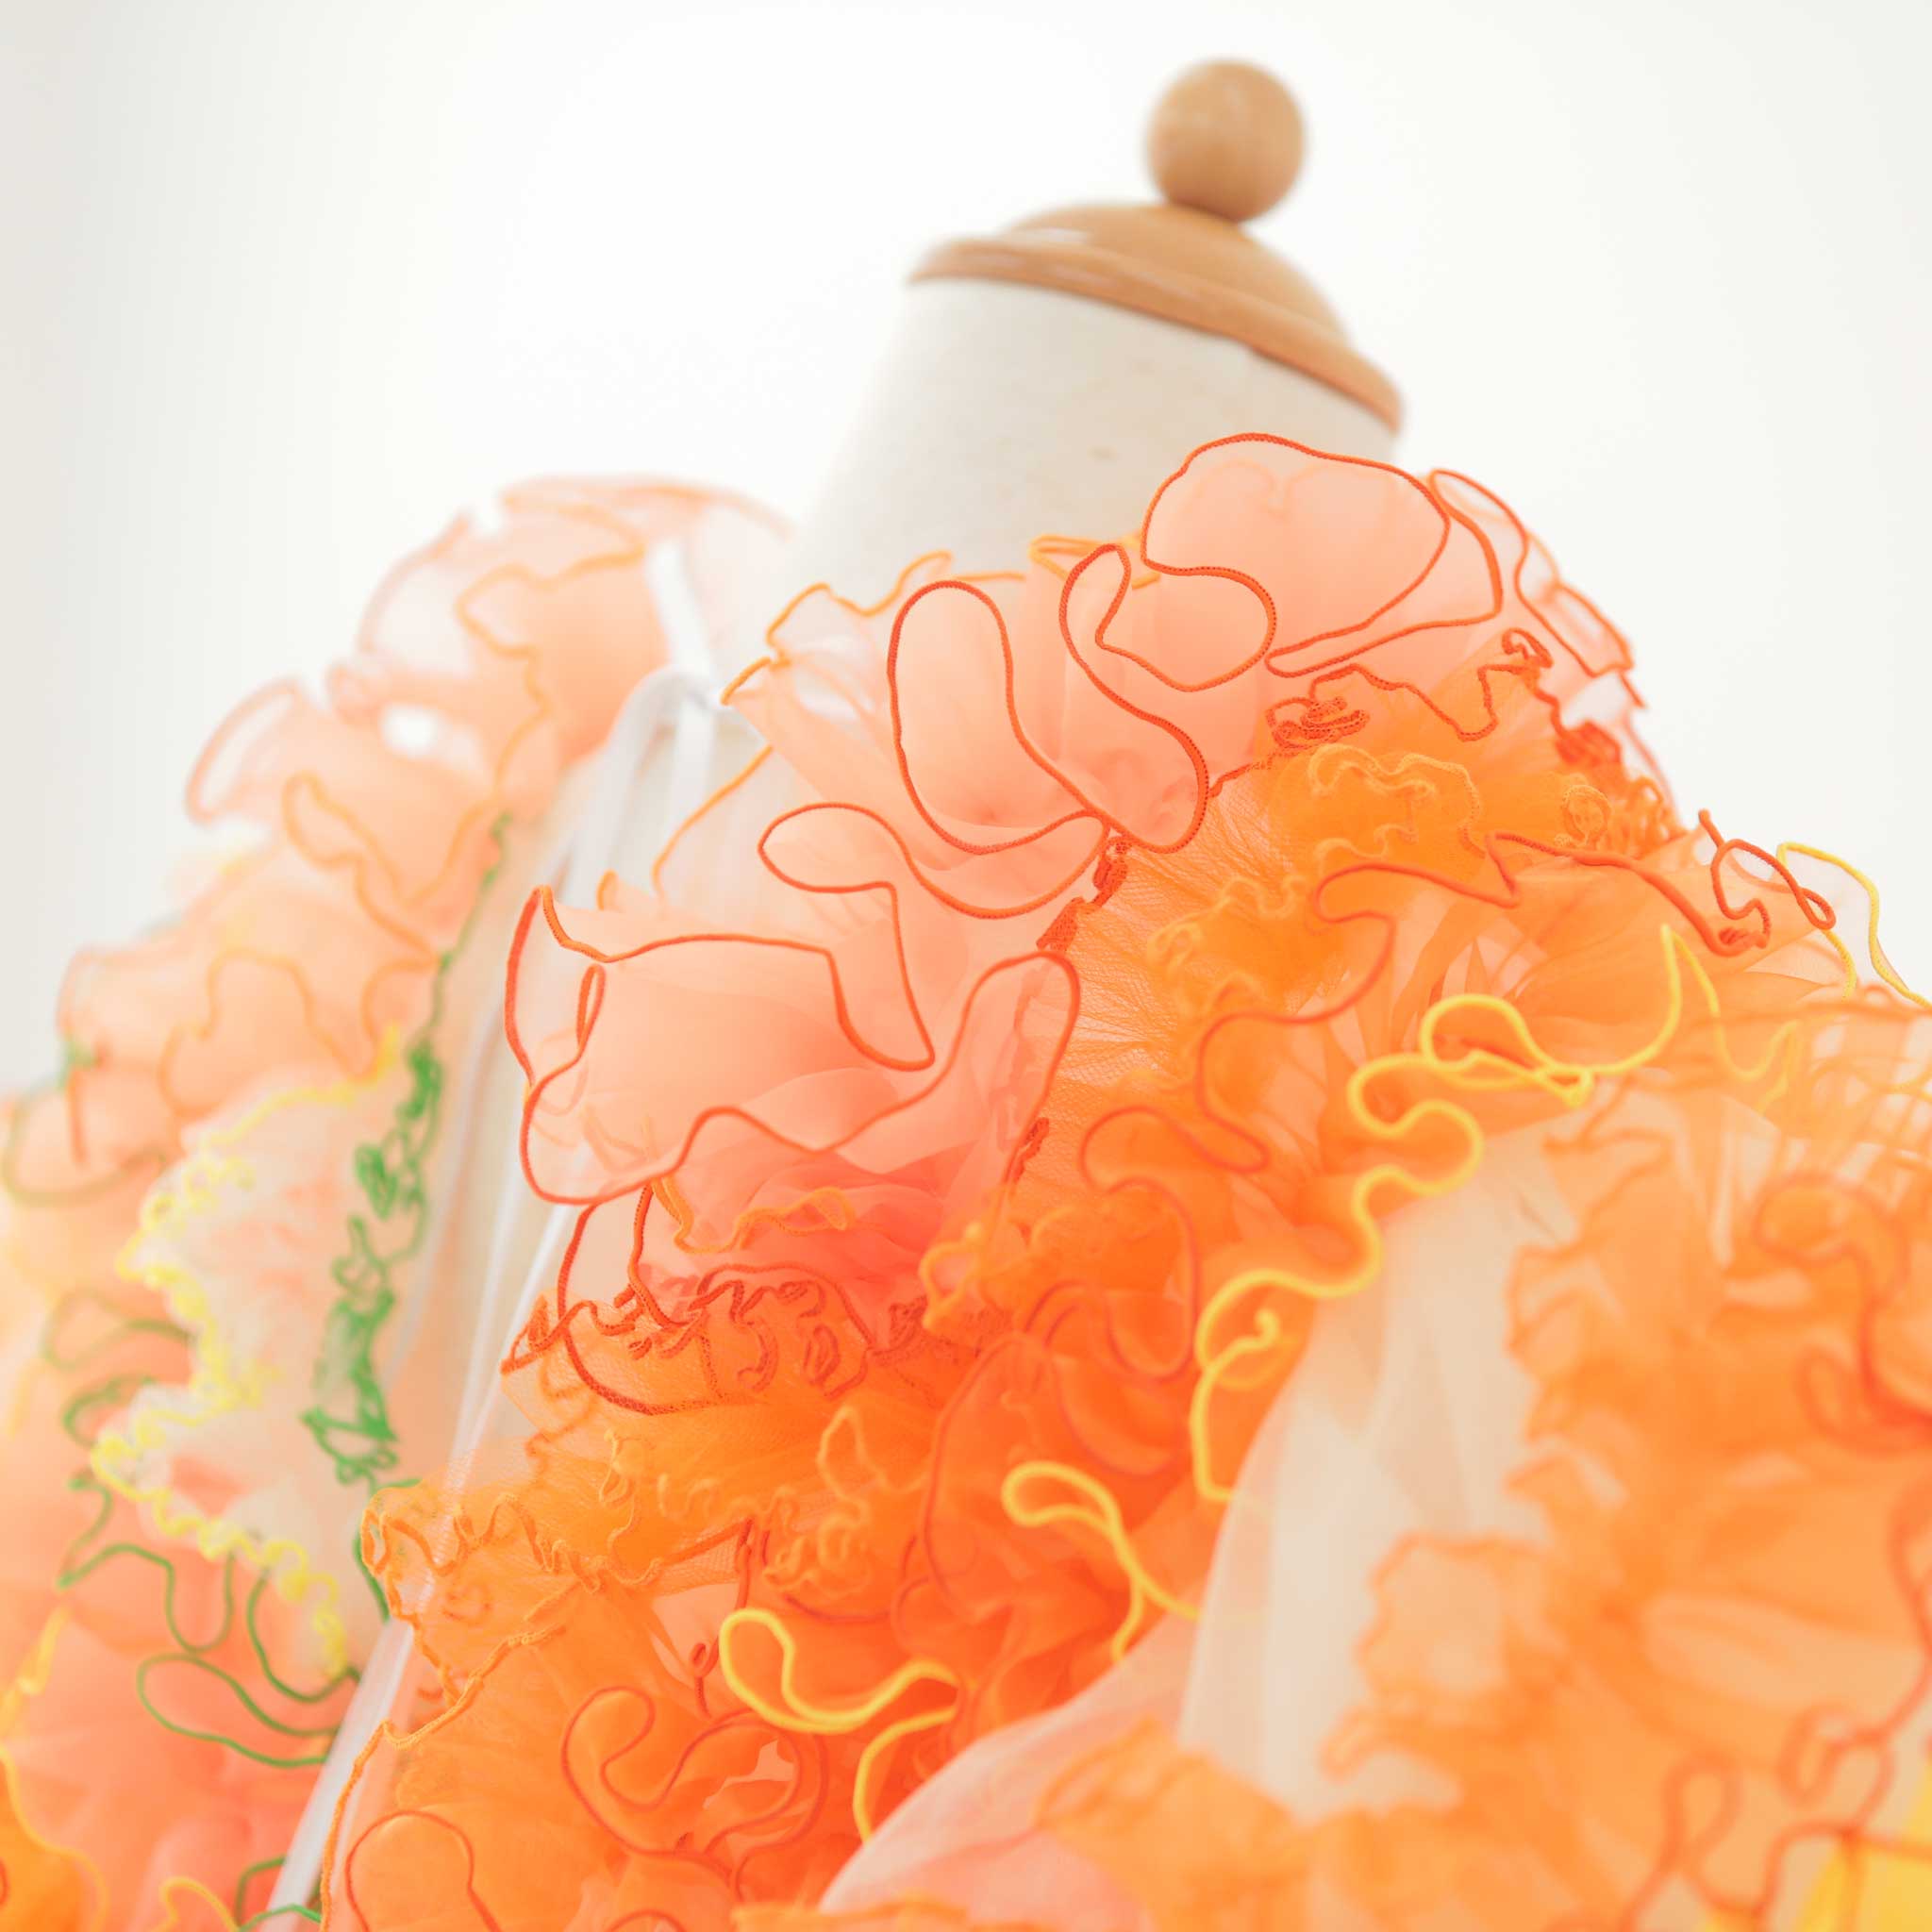 ジューシーなオレンジタルトのドレス - heartmelt こども衣装レンタルこども衣装レンタル